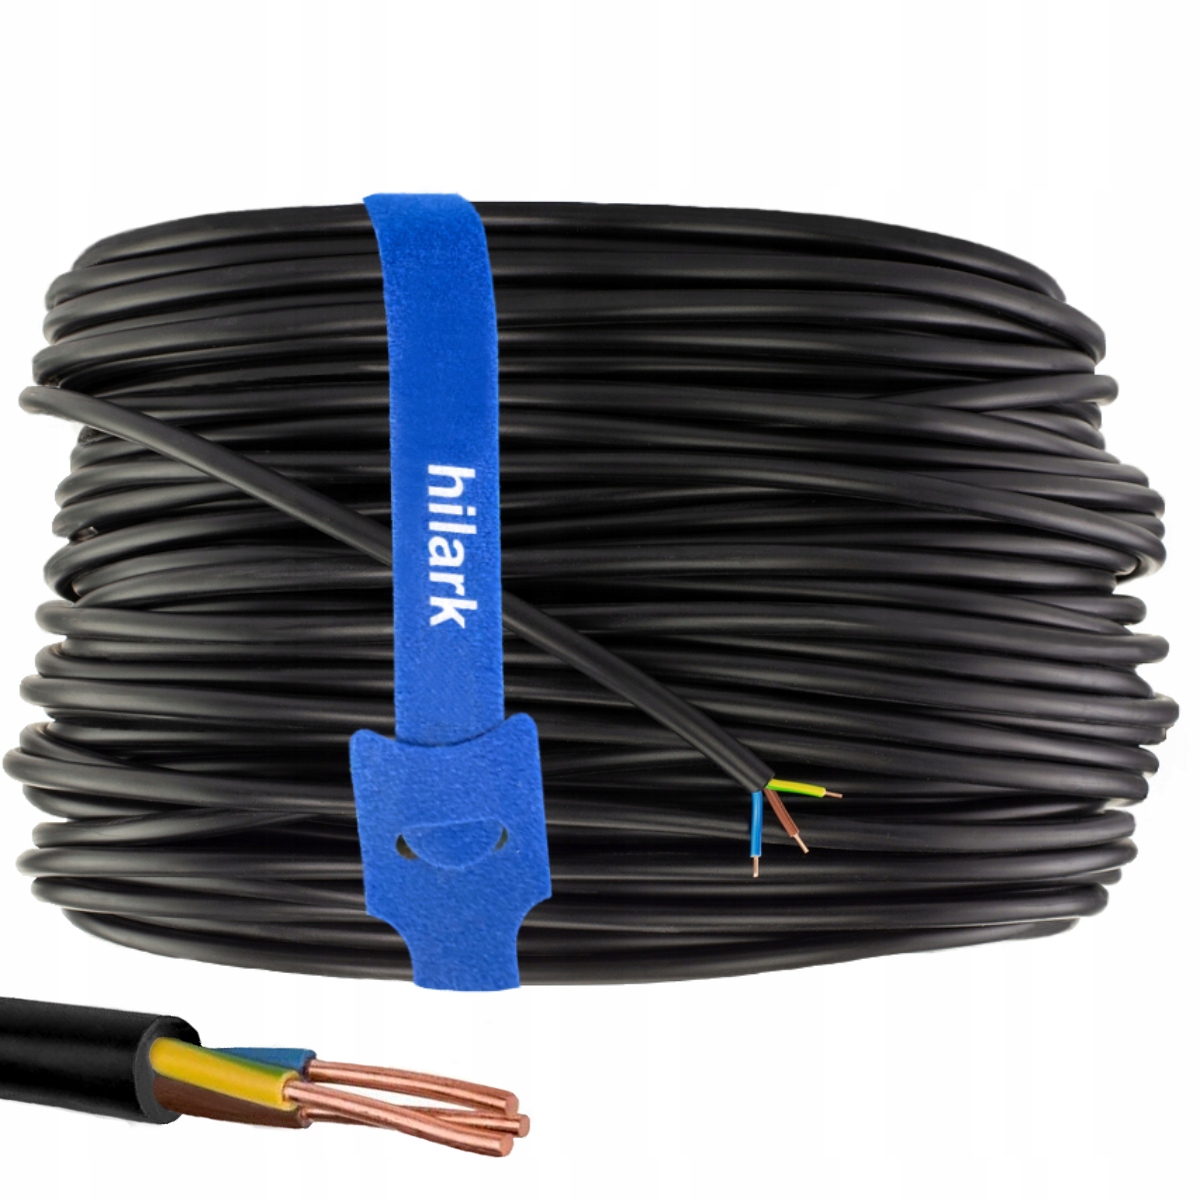 YDY kabel plochý 3x2.5 50m ELEKTROKABEL za 1214 Kč - Allegro